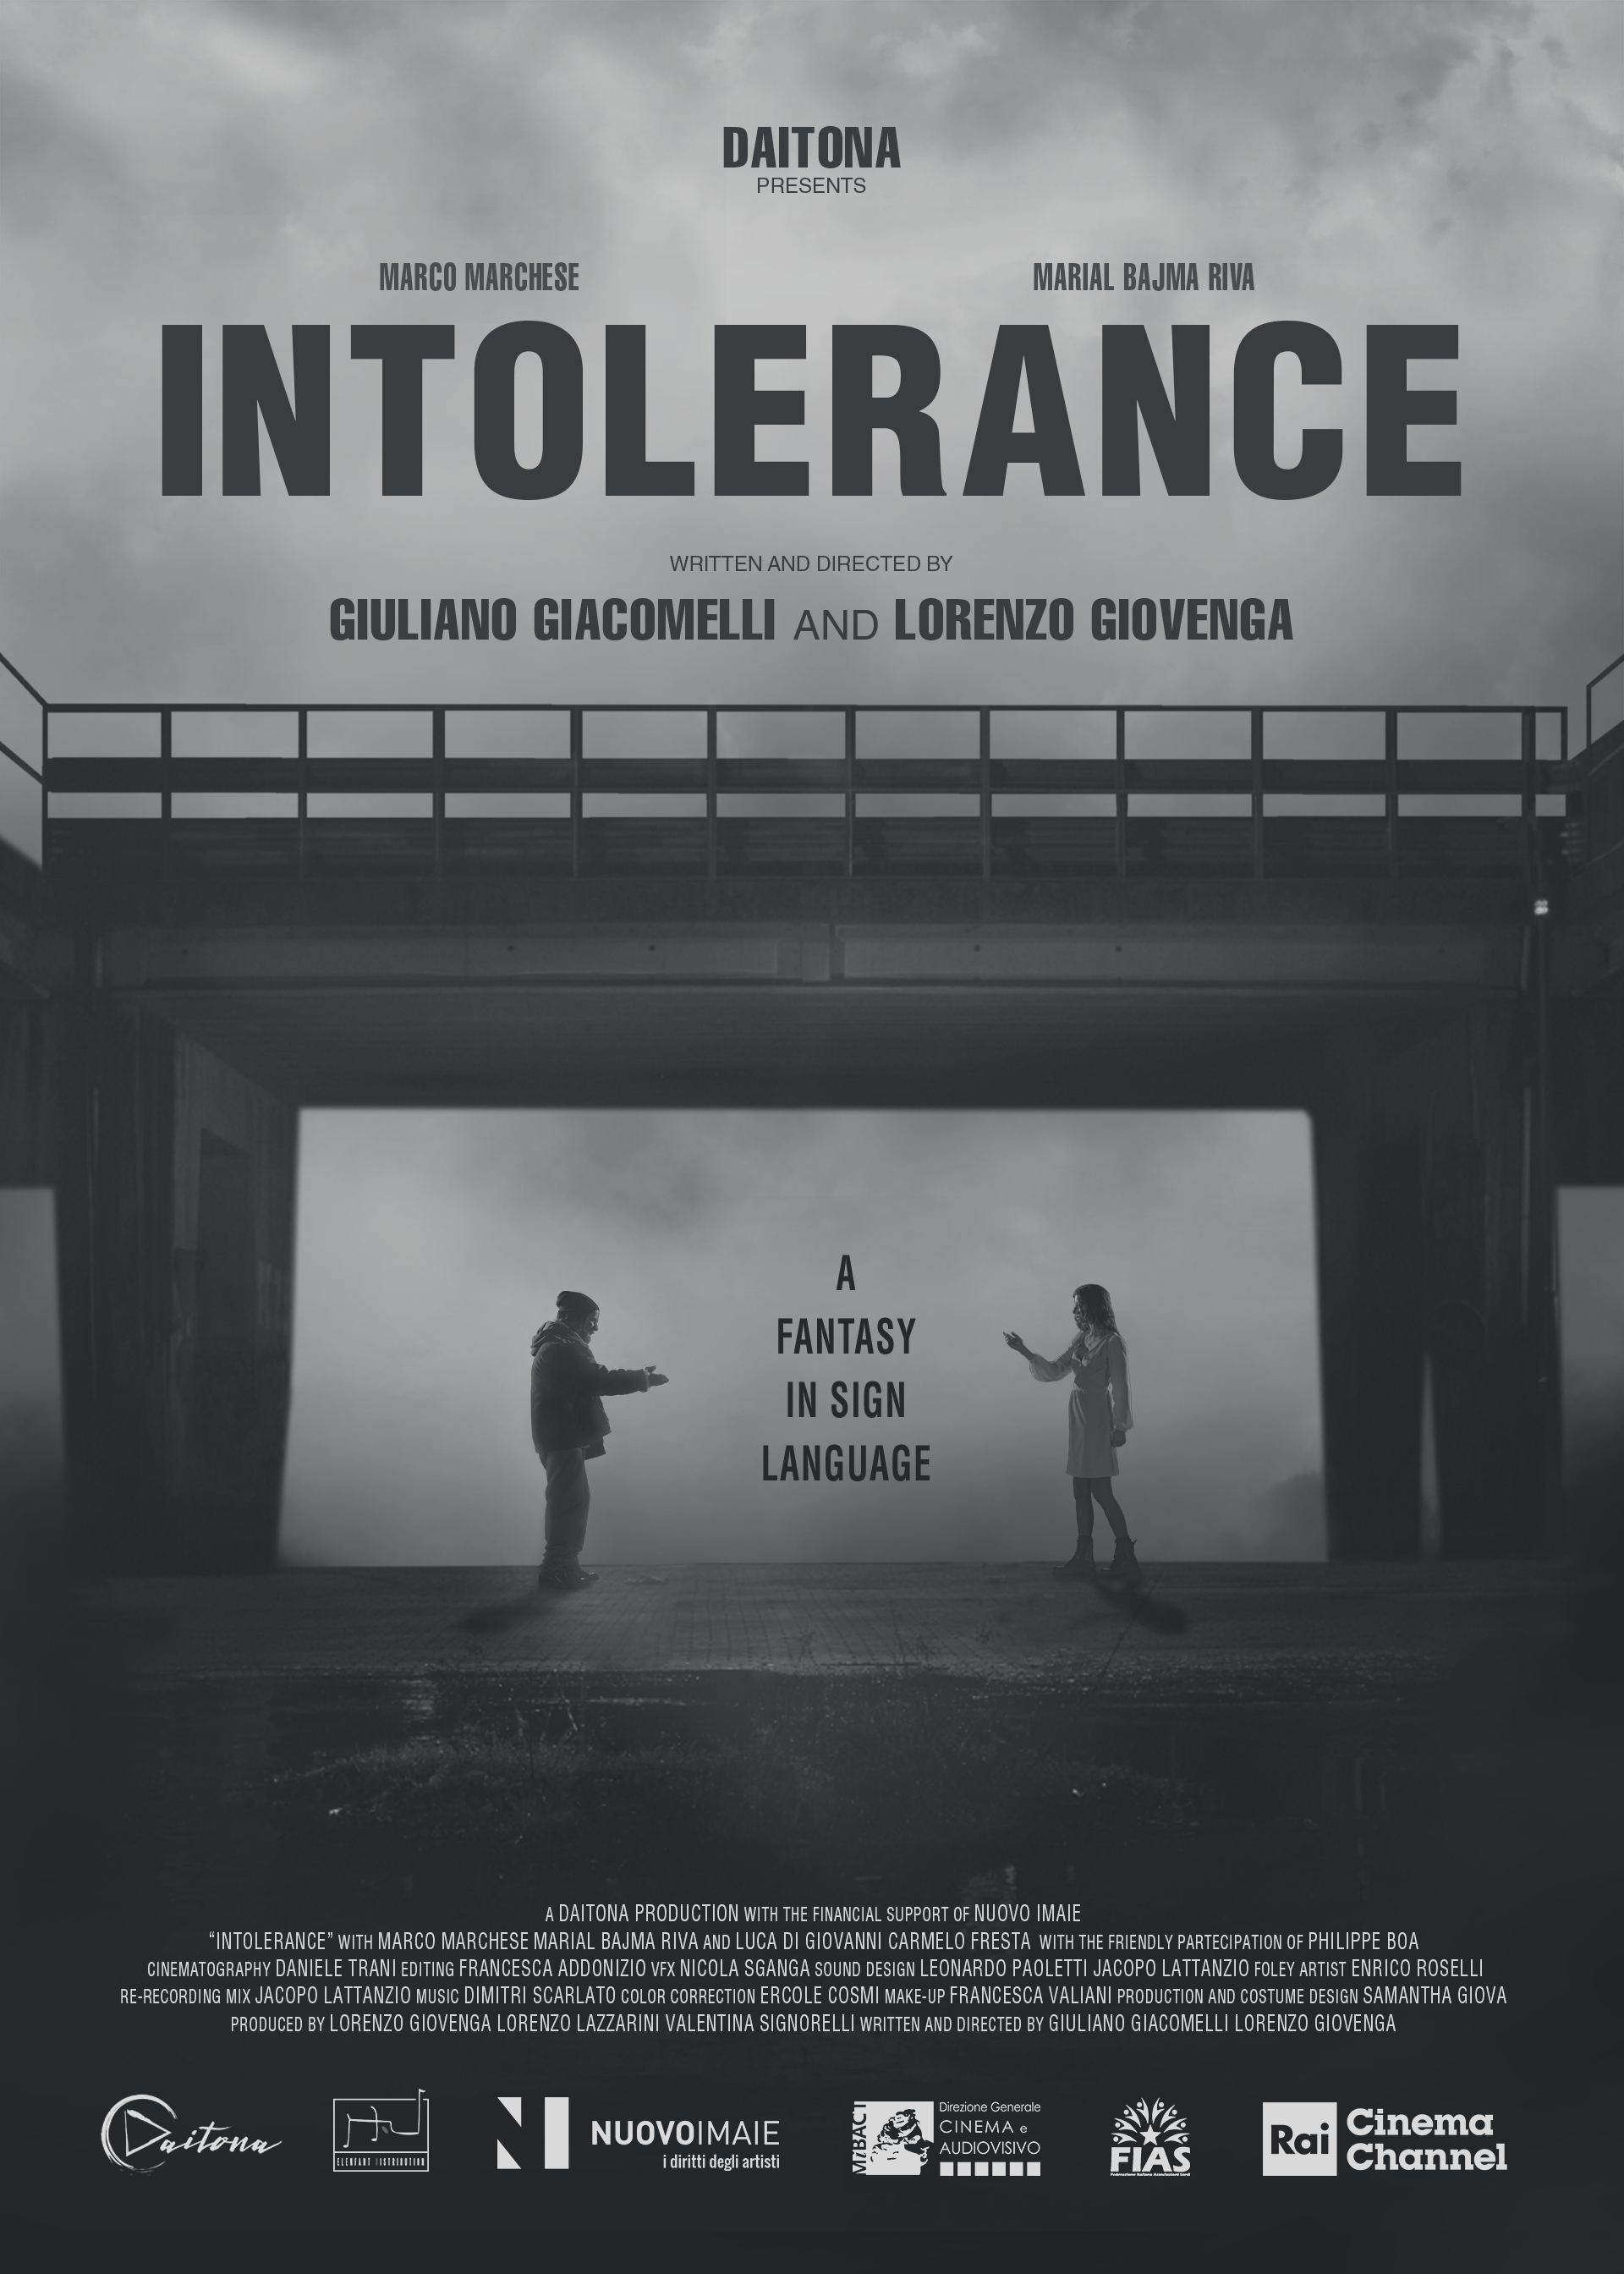 [NEWS] Il trailer di Intolerance, corto noir girato nella LIS